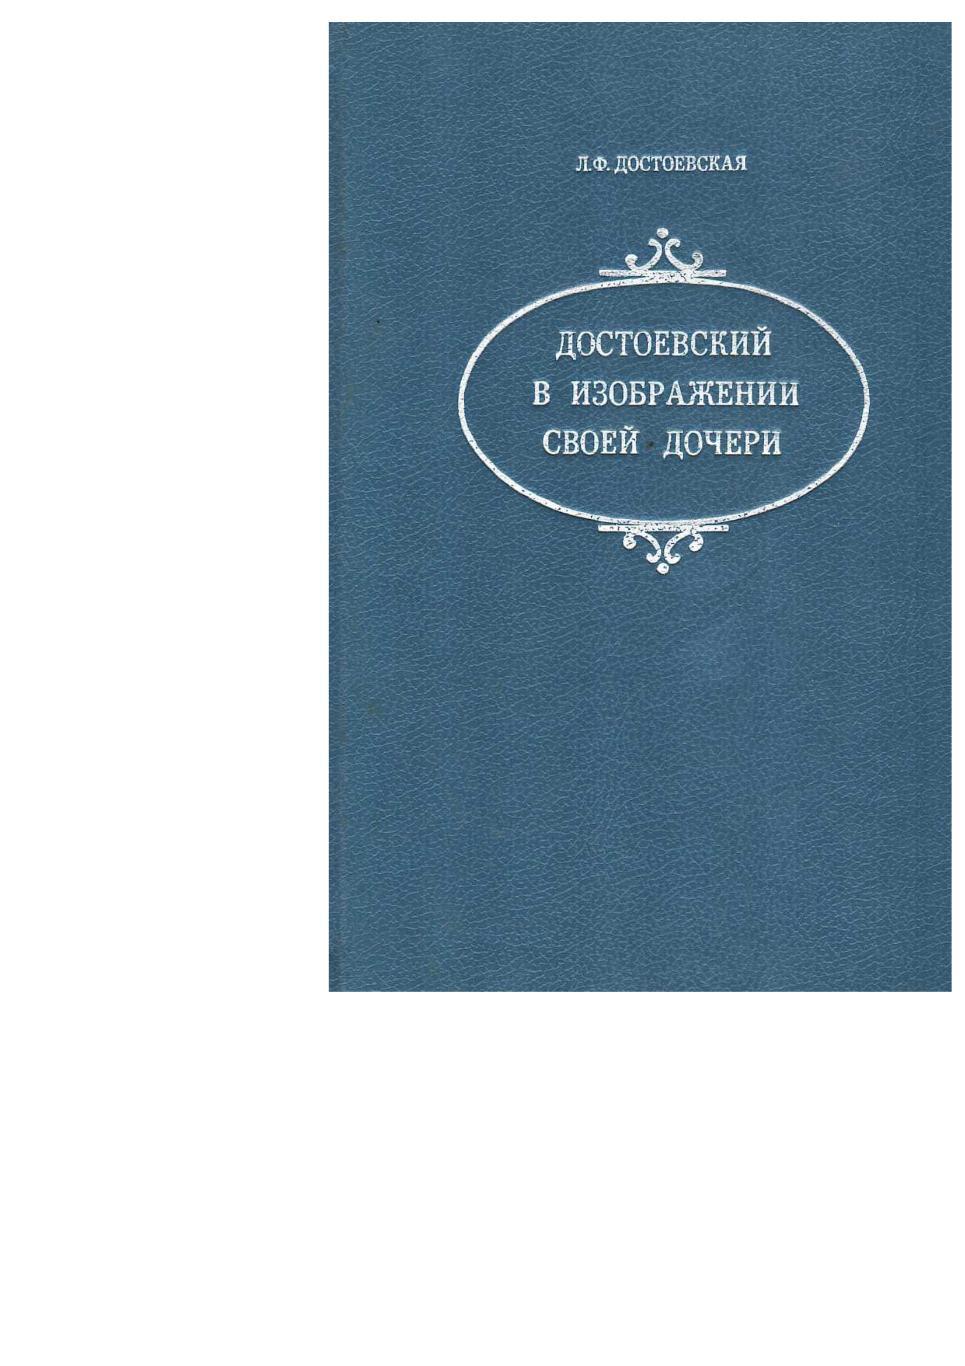 Достоевская Л.Ф. Достоевский в изображении своей дочери. – СПб., 1992. – 250 с.